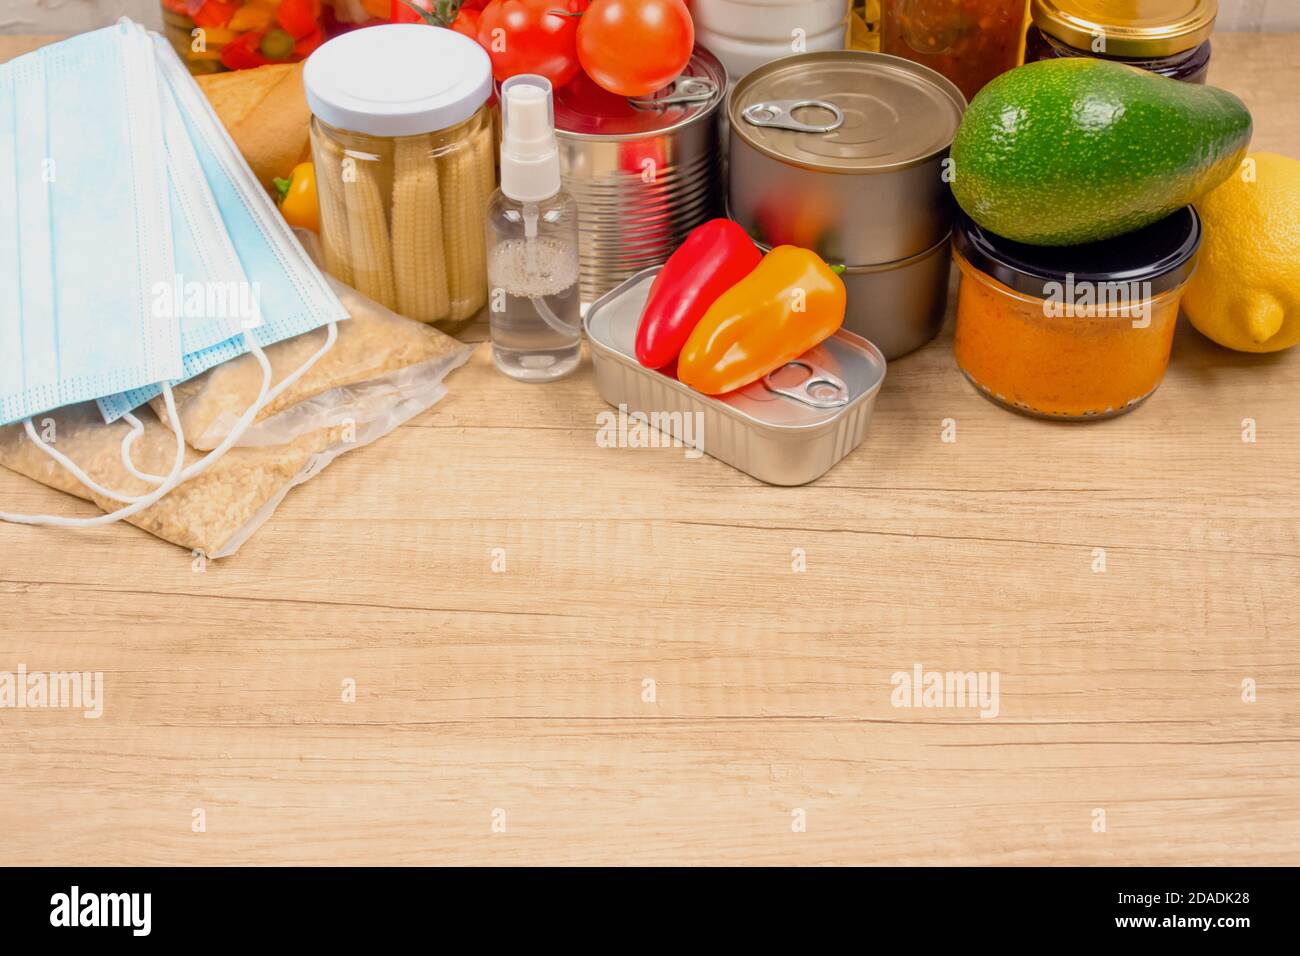 Donazioni di cibo e medicine su tavola di legno come sfondo con copyspace - pasta, verdure fresche, cibo in scatola, baguette, olio da cucina, monouso Foto Stock